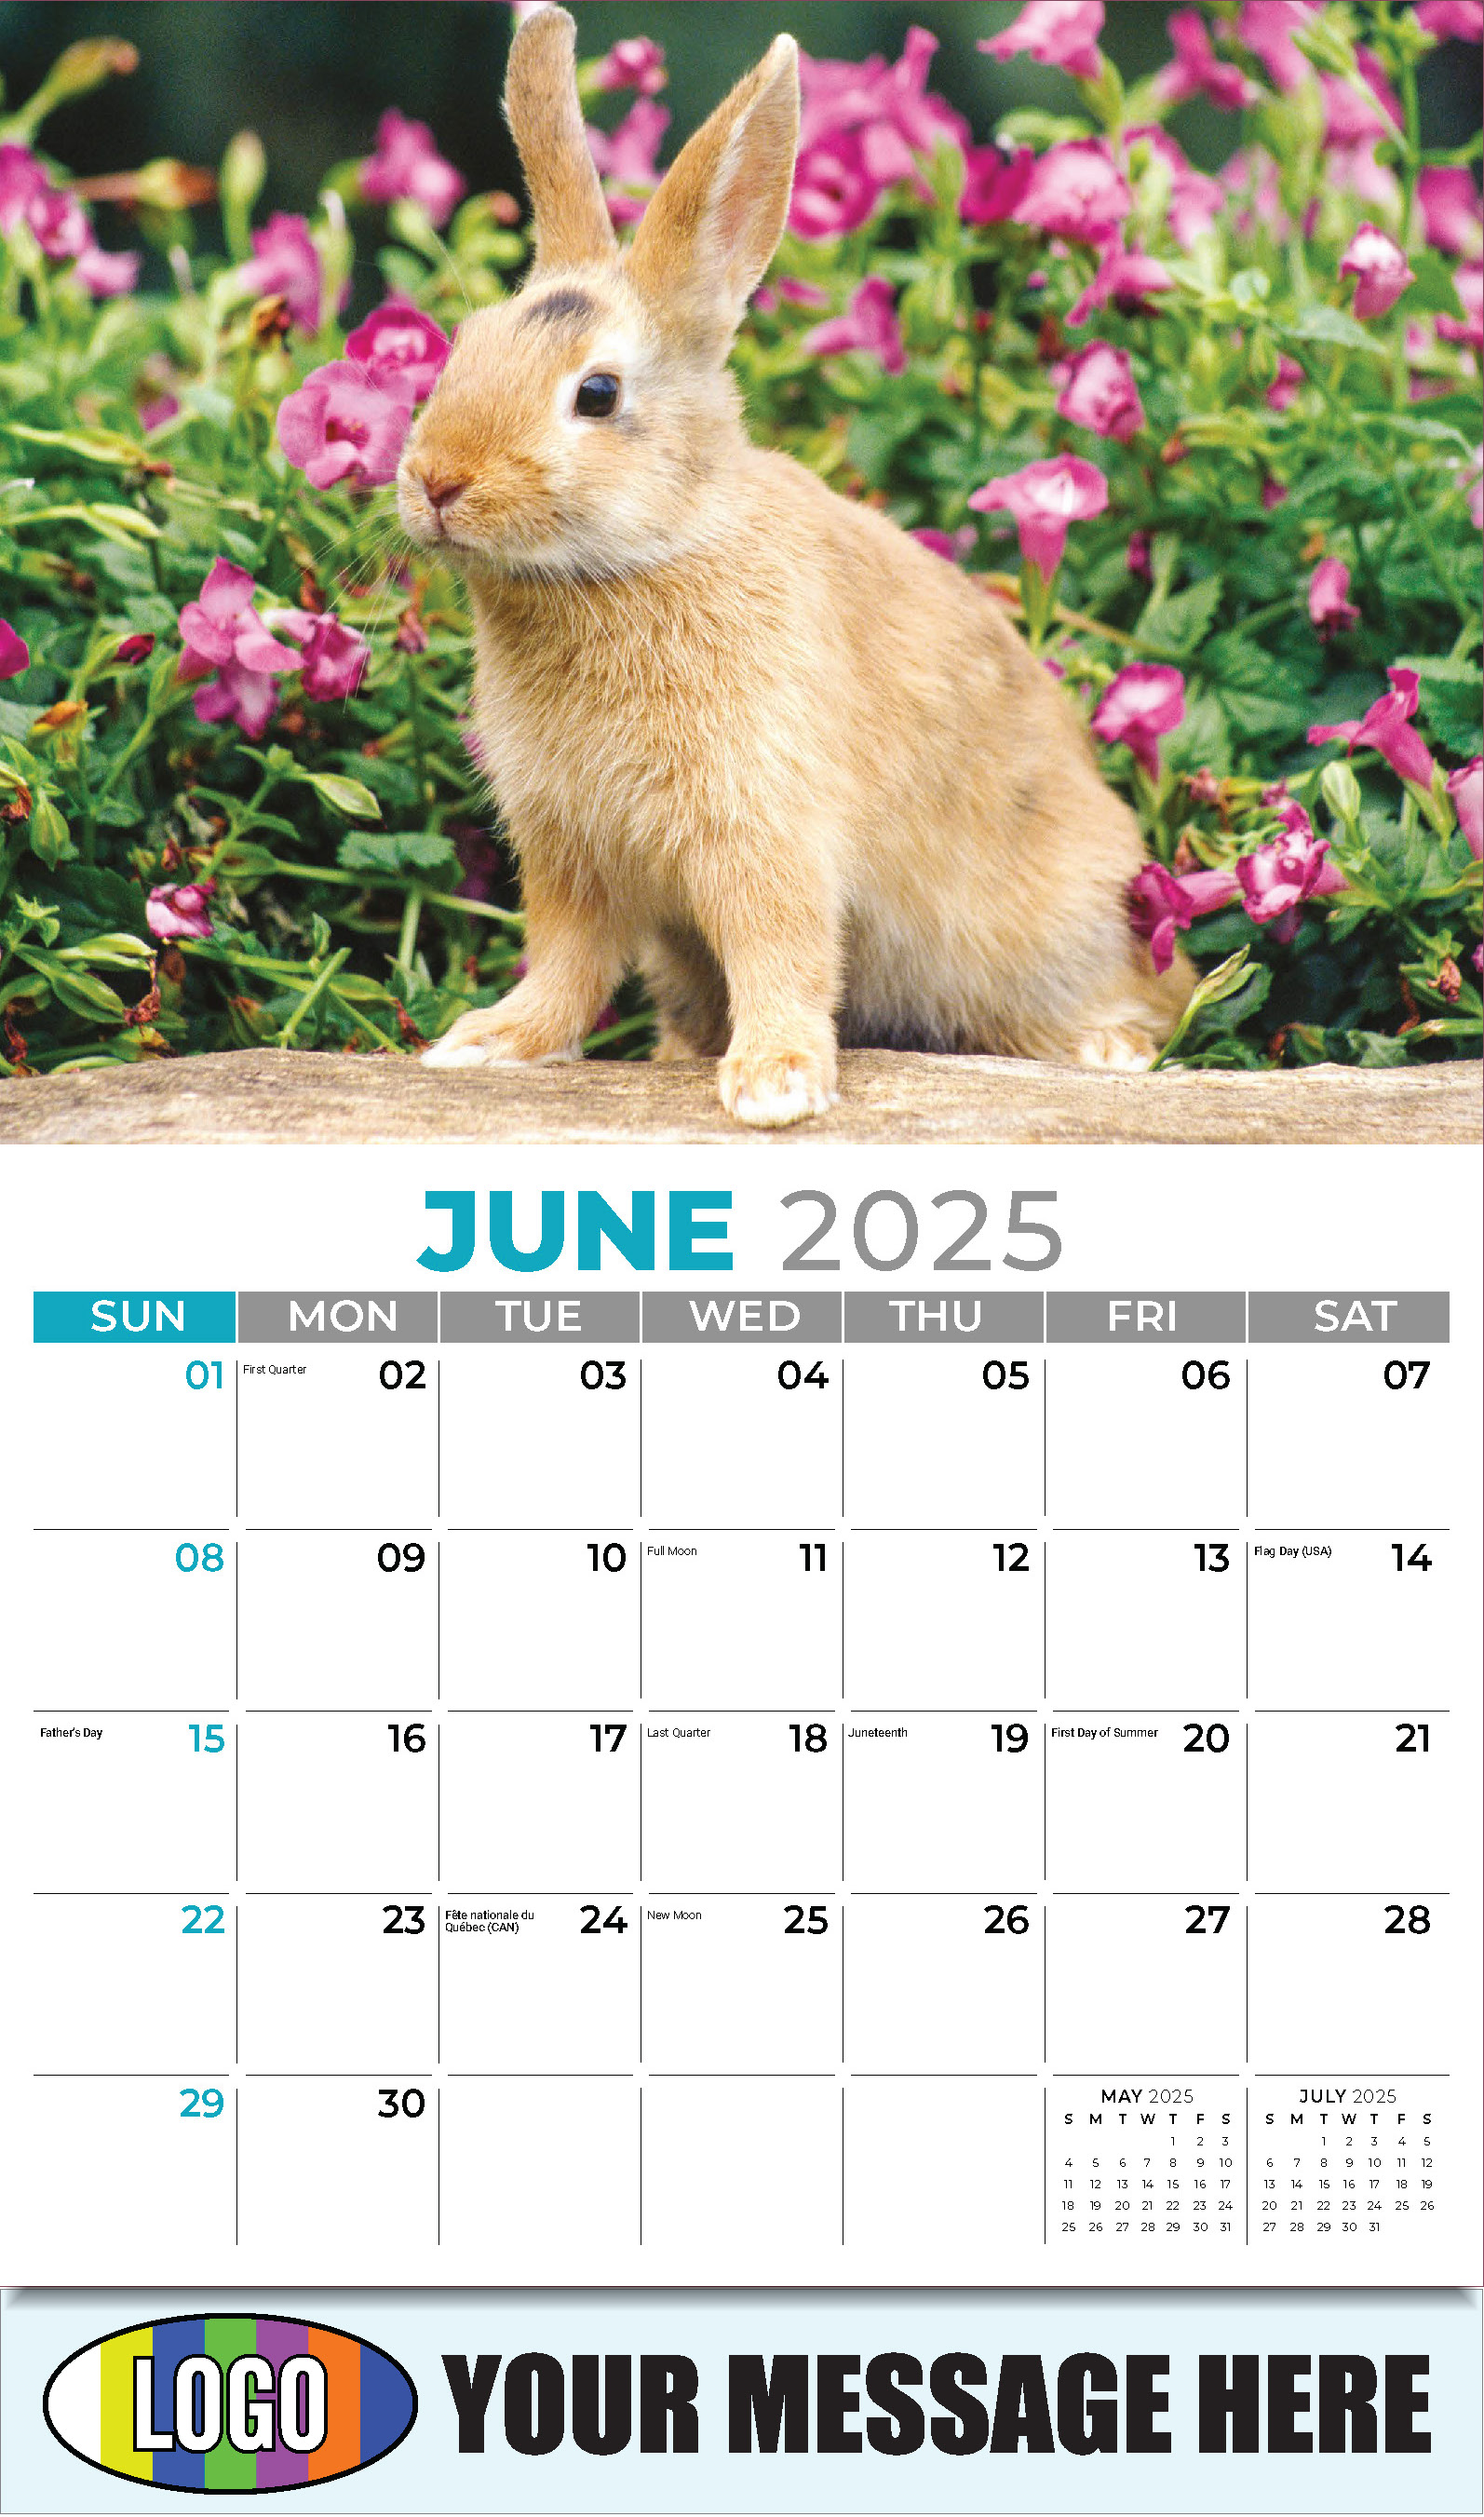 Pets 2025 Business Advertising Wall Calendar - June